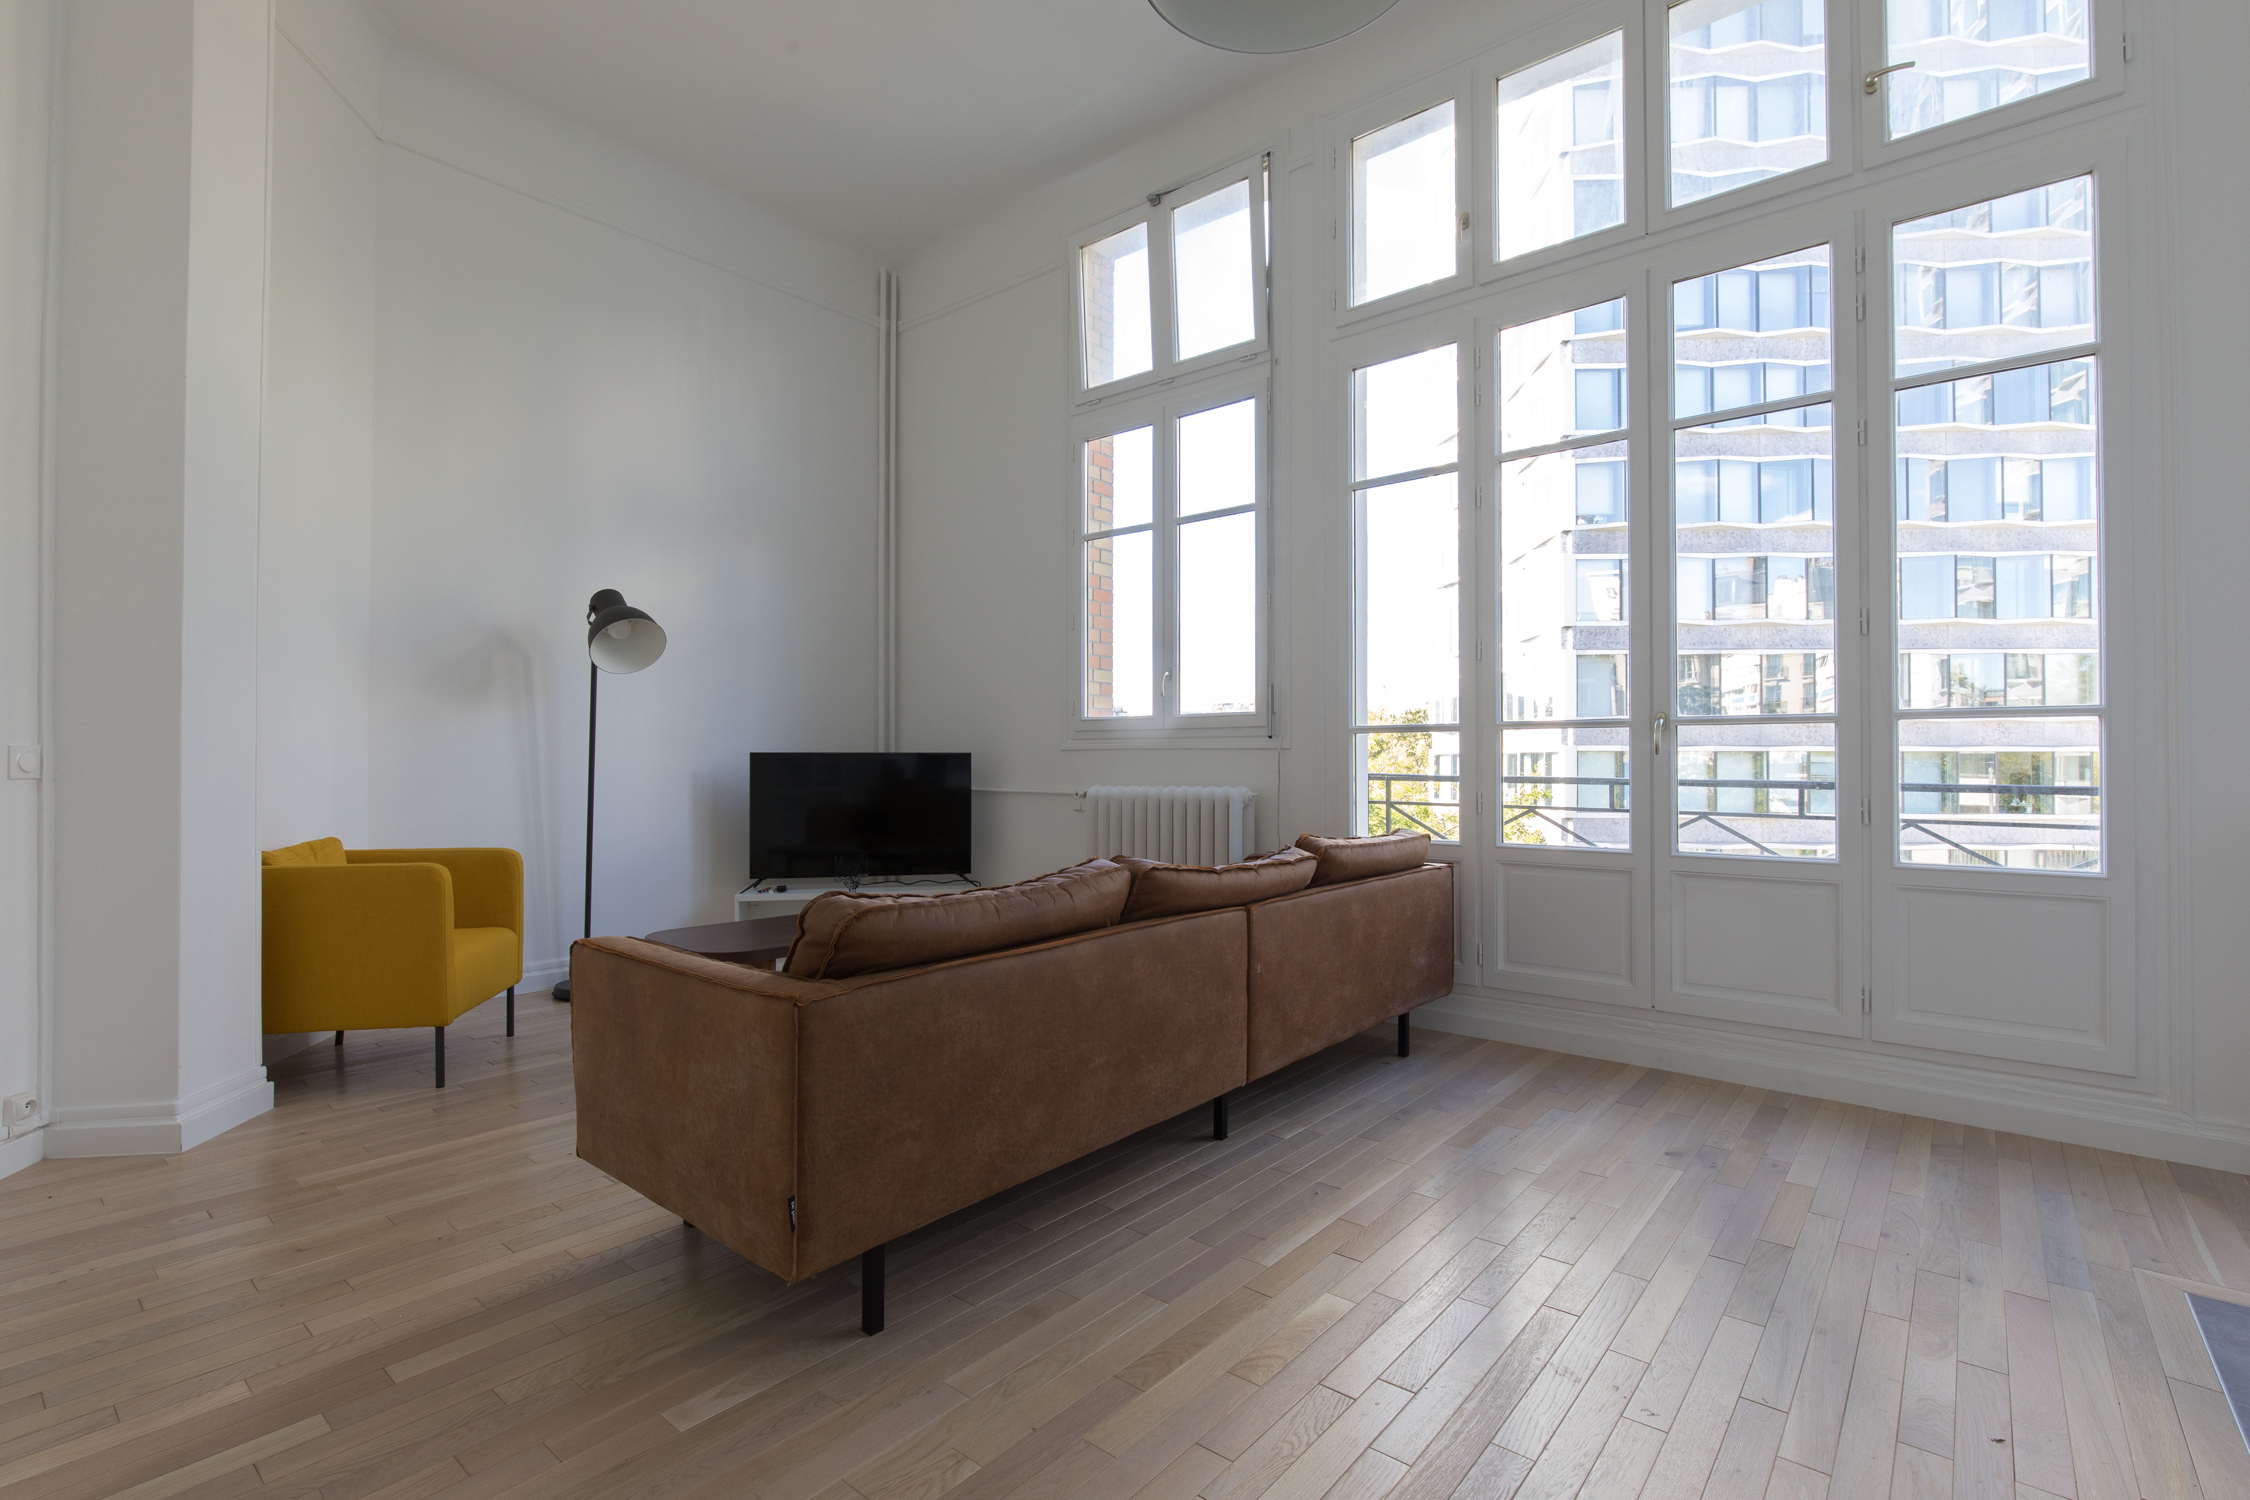 location duplex loft appartement Javel Paris 15ème 75015 Pont Mirabeau